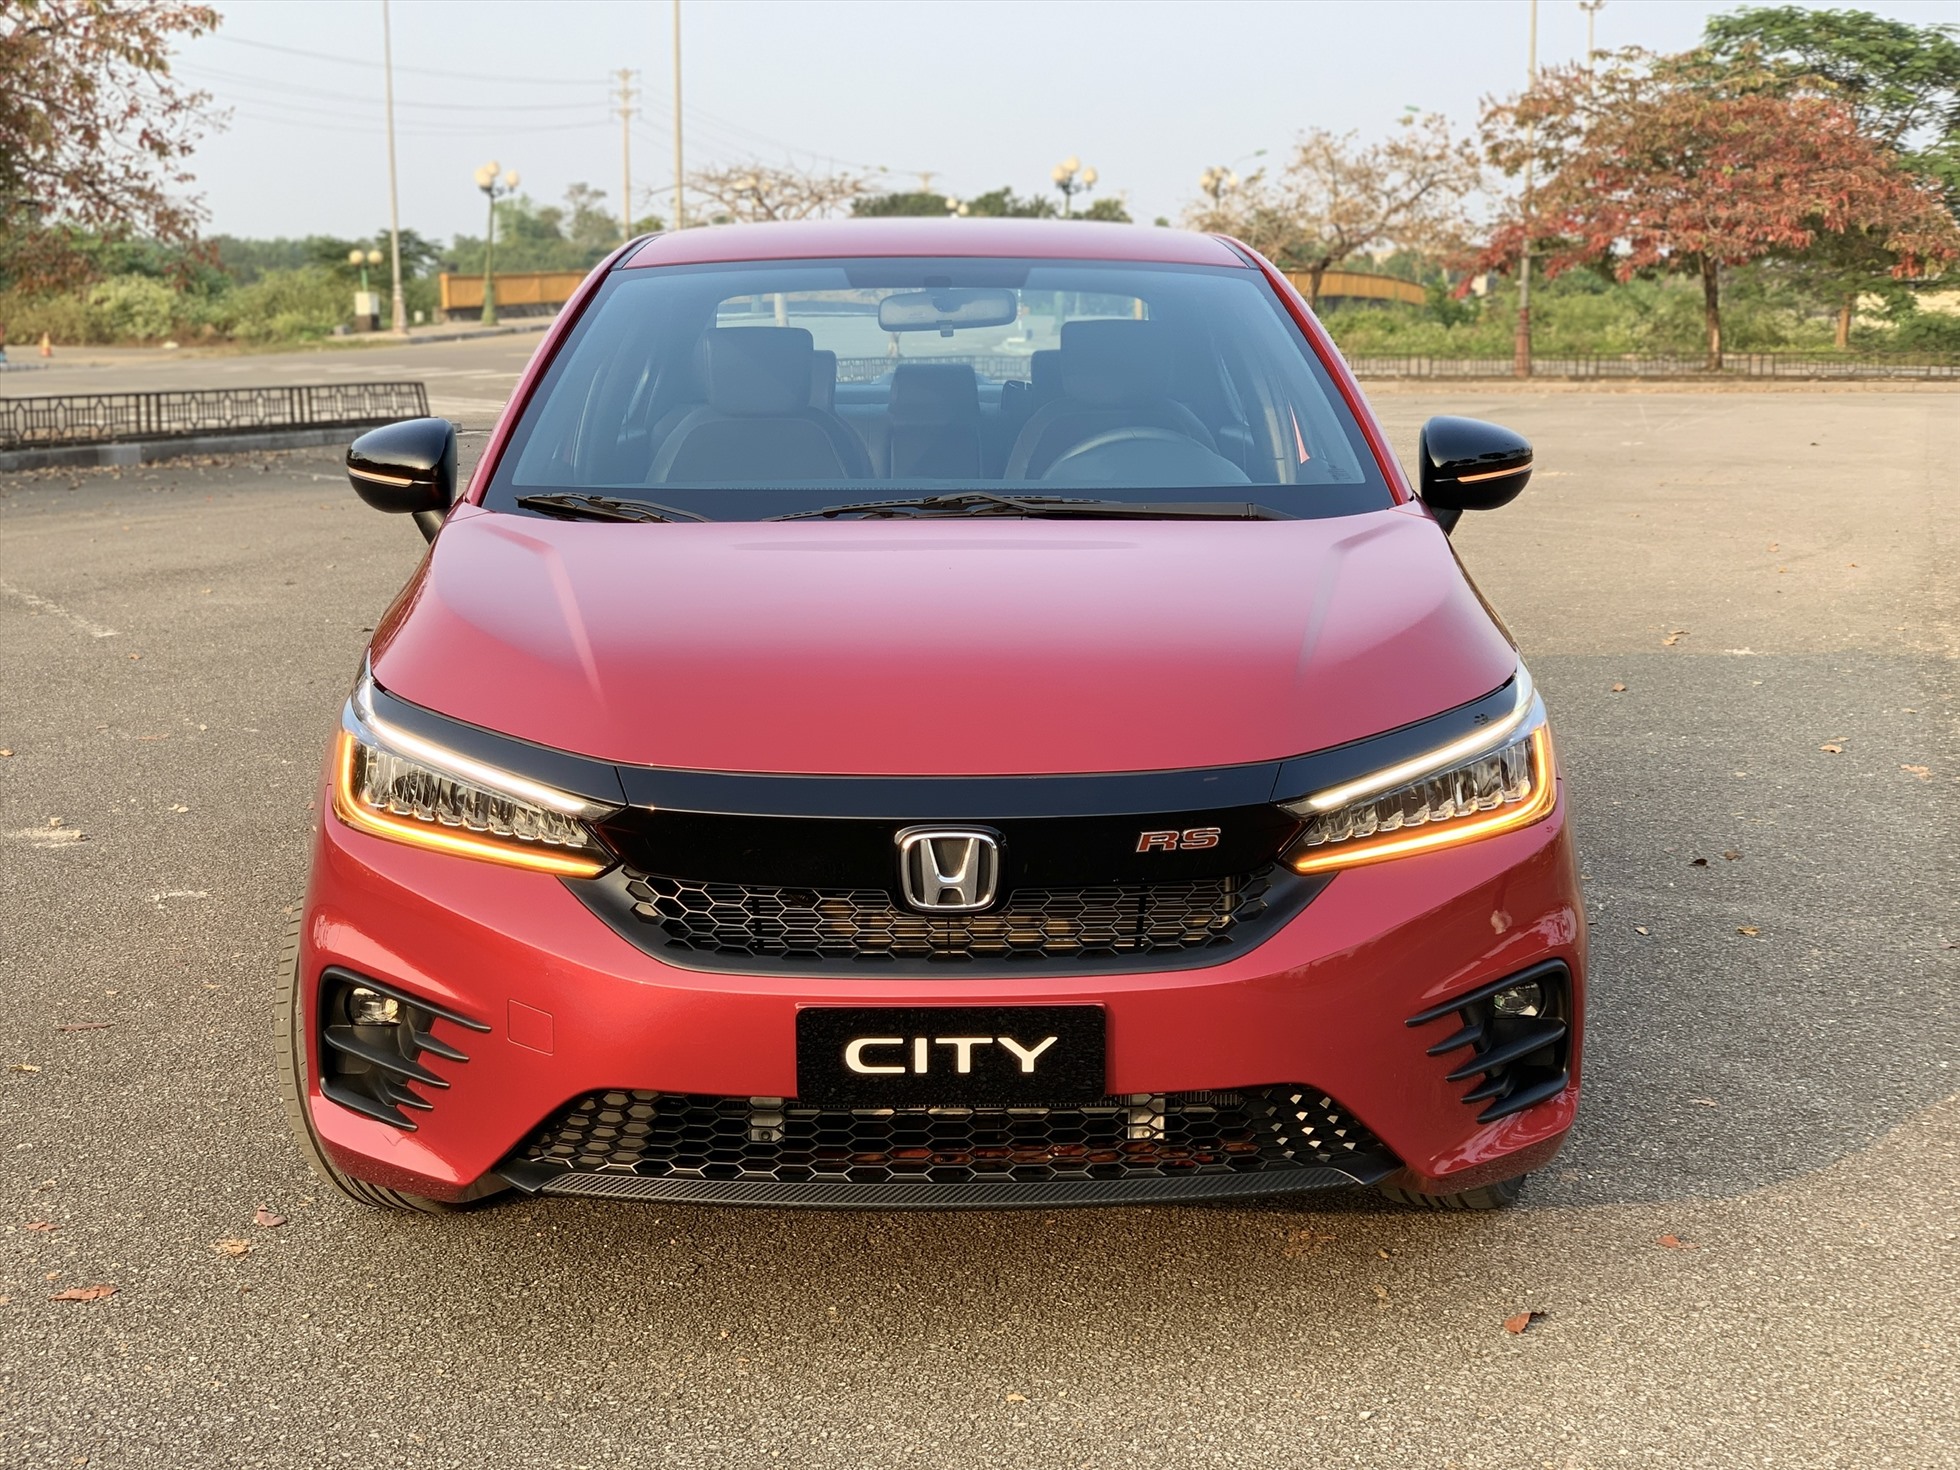 Honda City hiện nay vẫn là phiên bản ra mắt từ năm 2021, sử dụng động cơ 1.5L kết hợp với hộp số tự động vô cấp CVT. Mẫu sedan hạng B này có mức giá dao động từ 499 đến 599 triệu đồng. Ảnh: Khánh Linh.